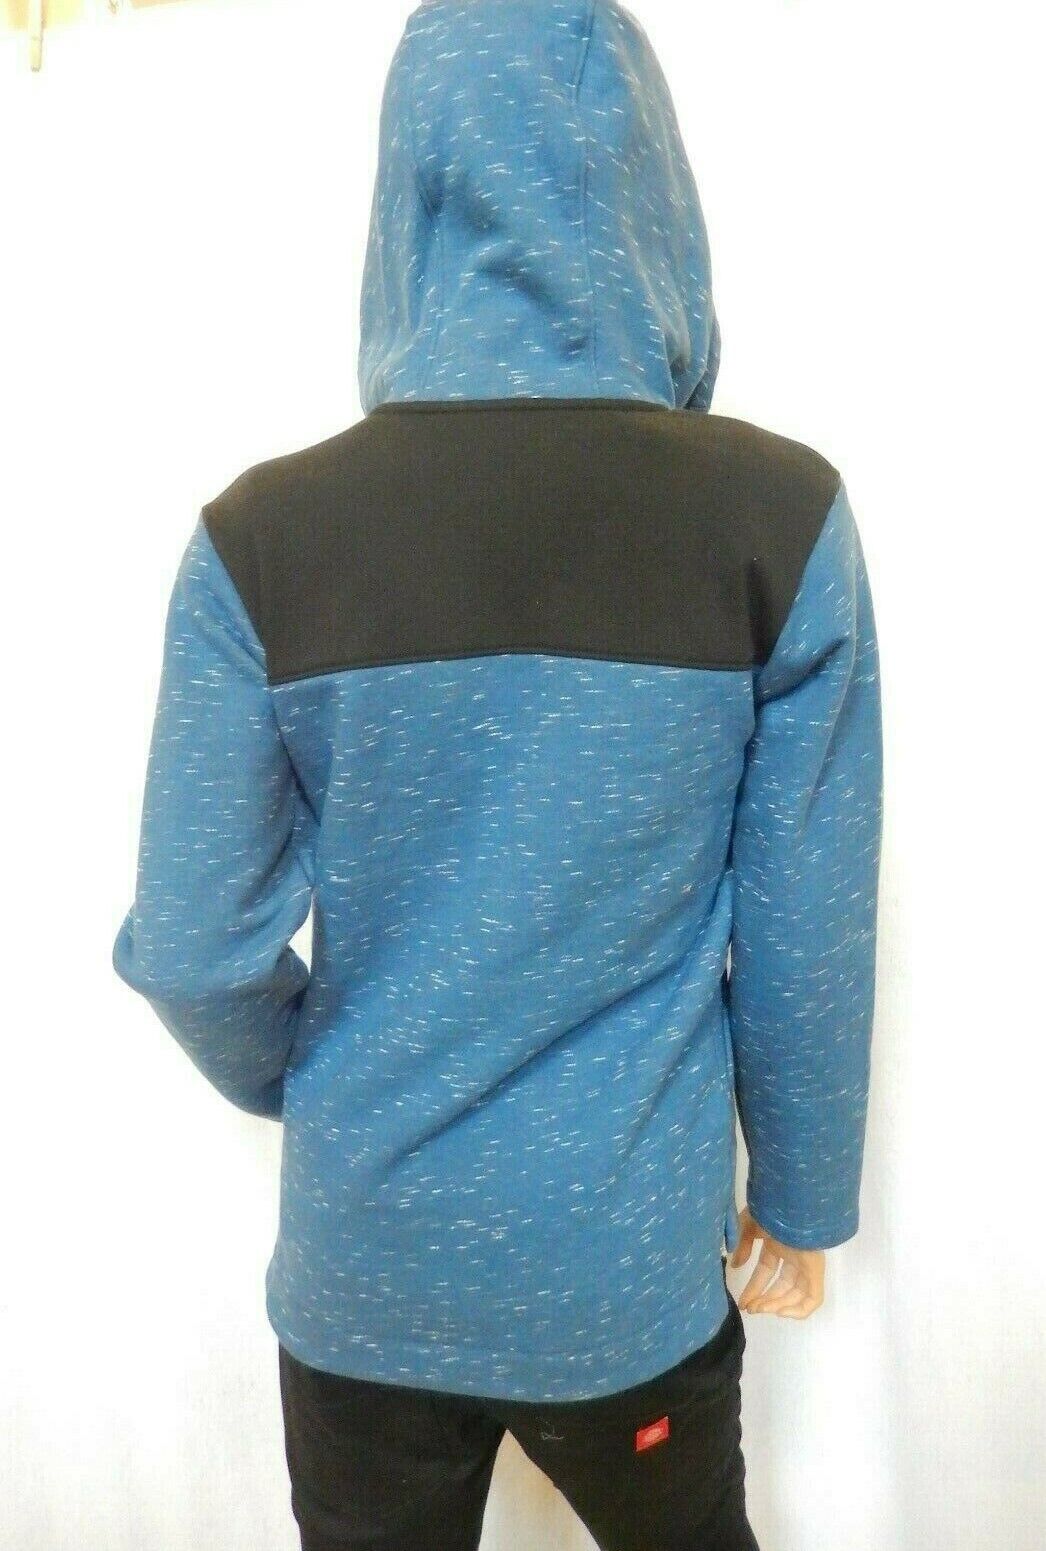 *NWT* $65 The North Face Boys Linton Peak Anorak Jacket Blue Hooded Sz XL